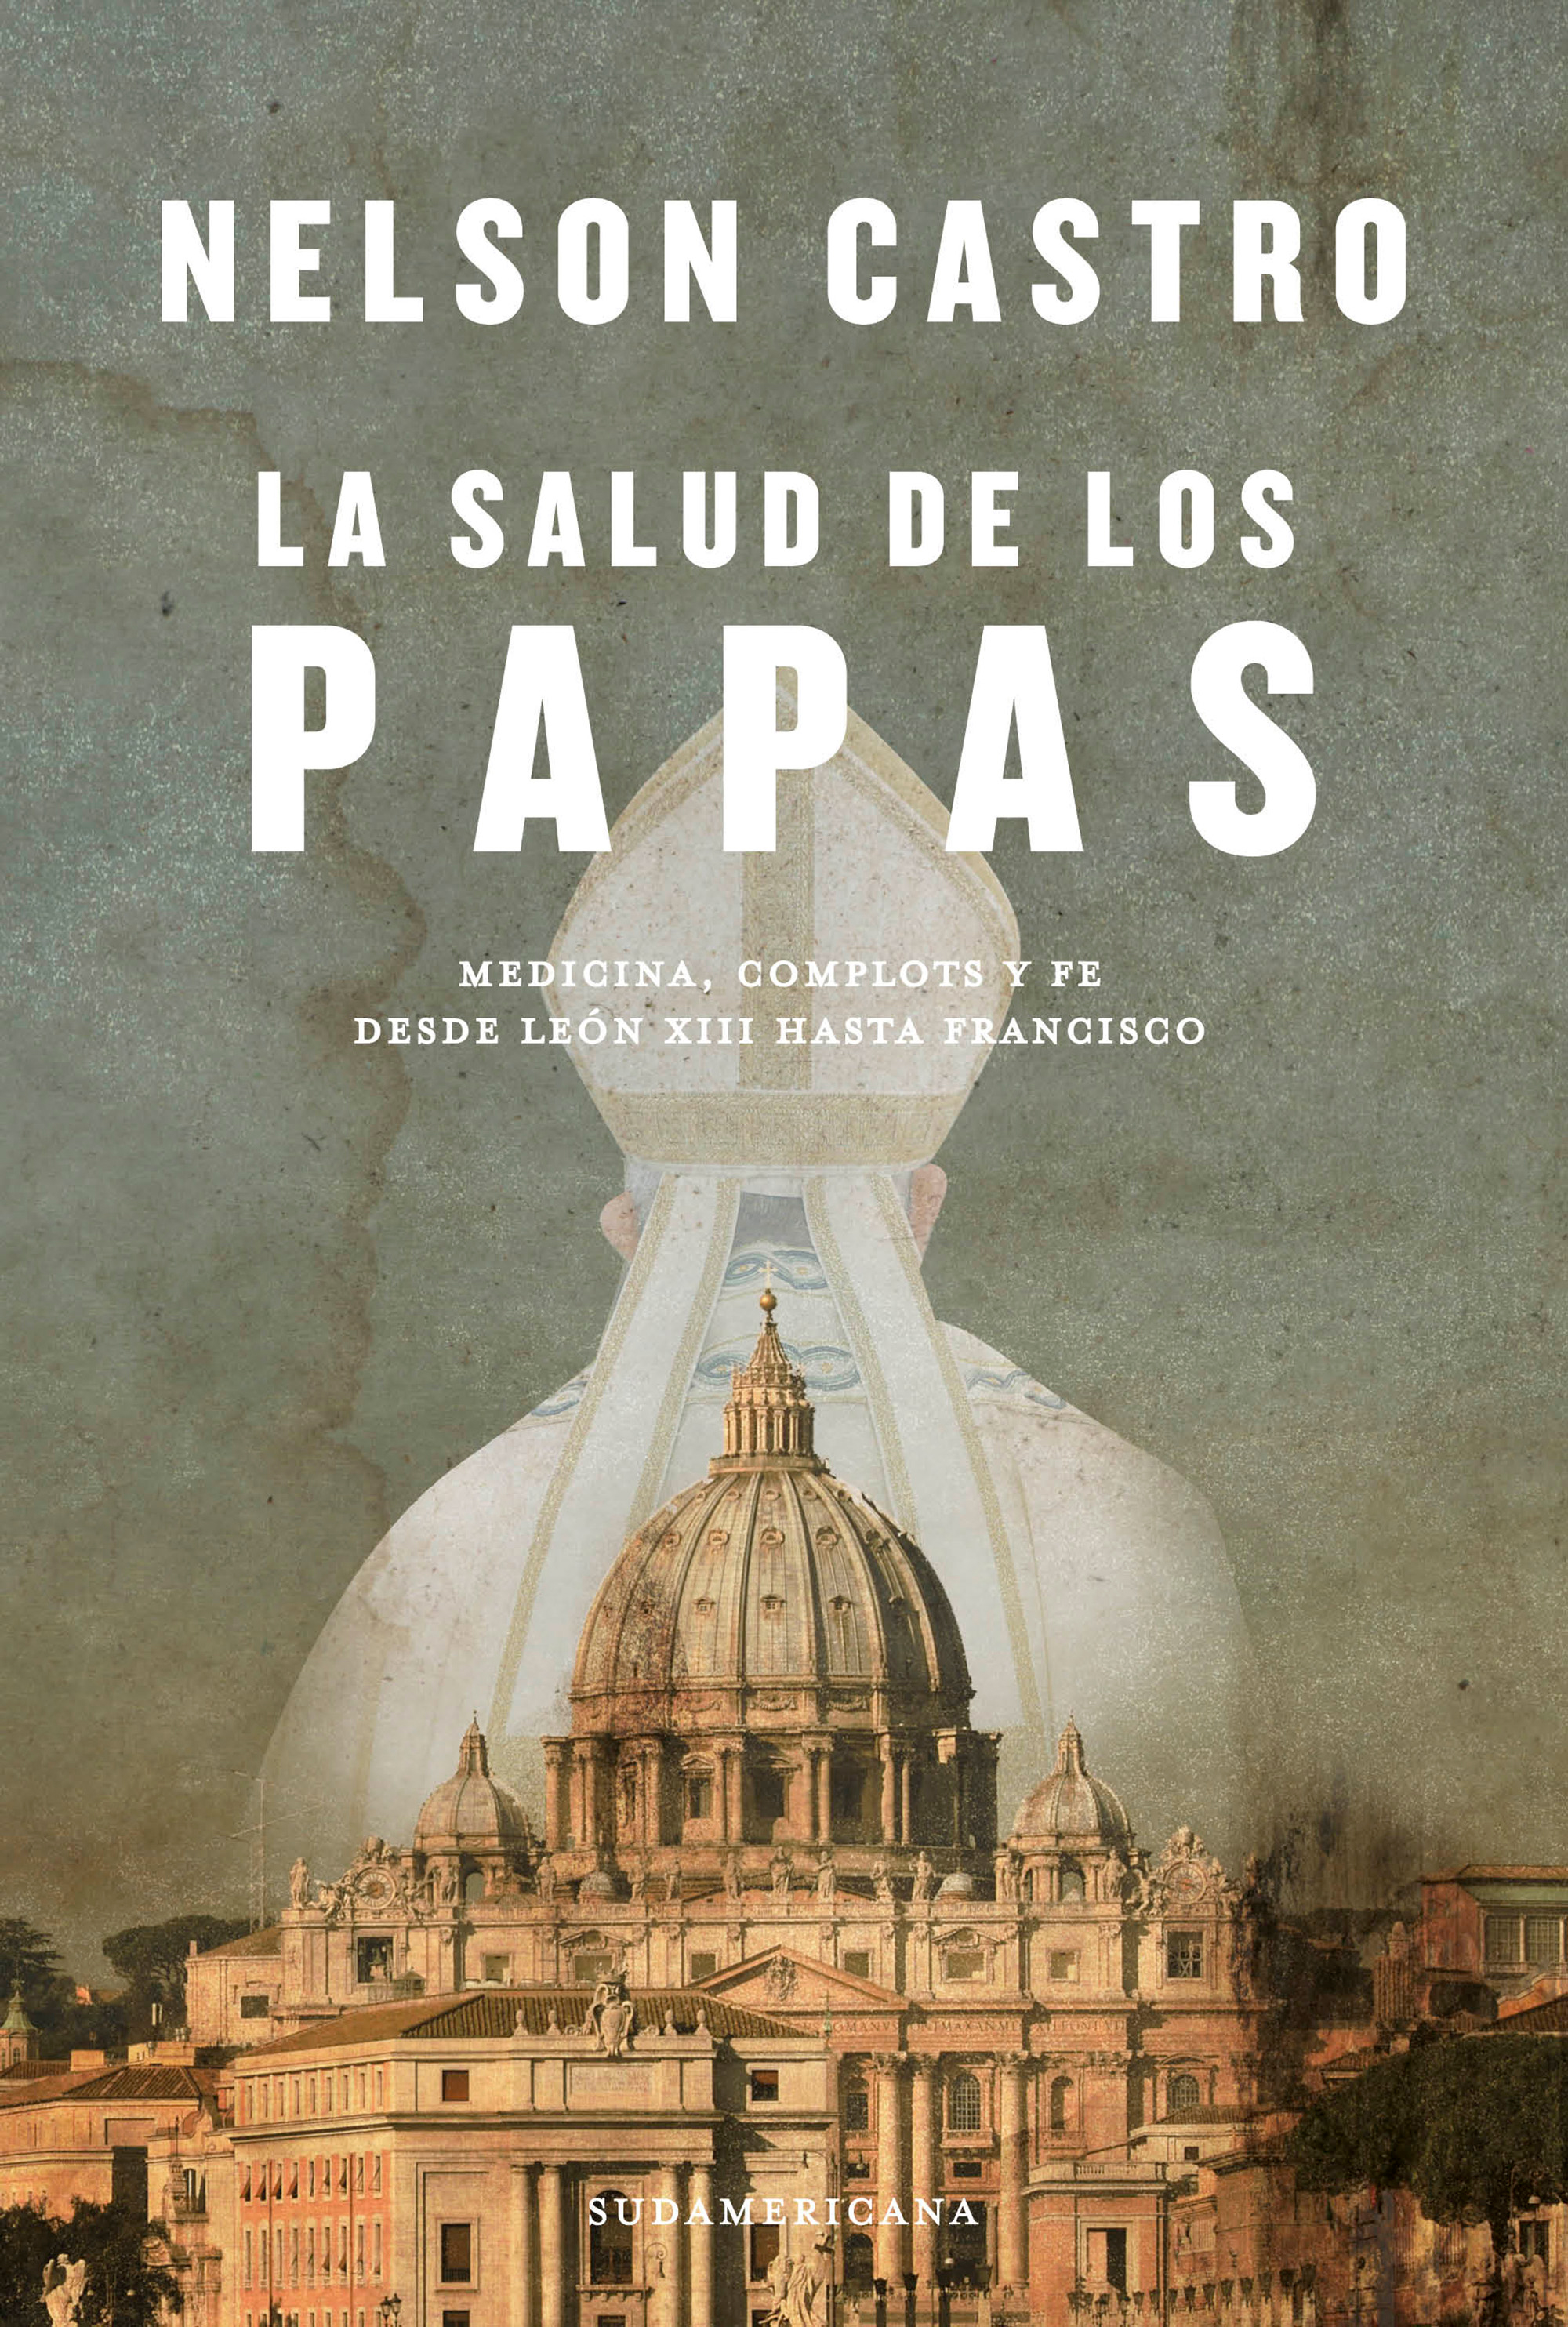 La tapa del libro de Nelson Castro sobre la salud de los papas